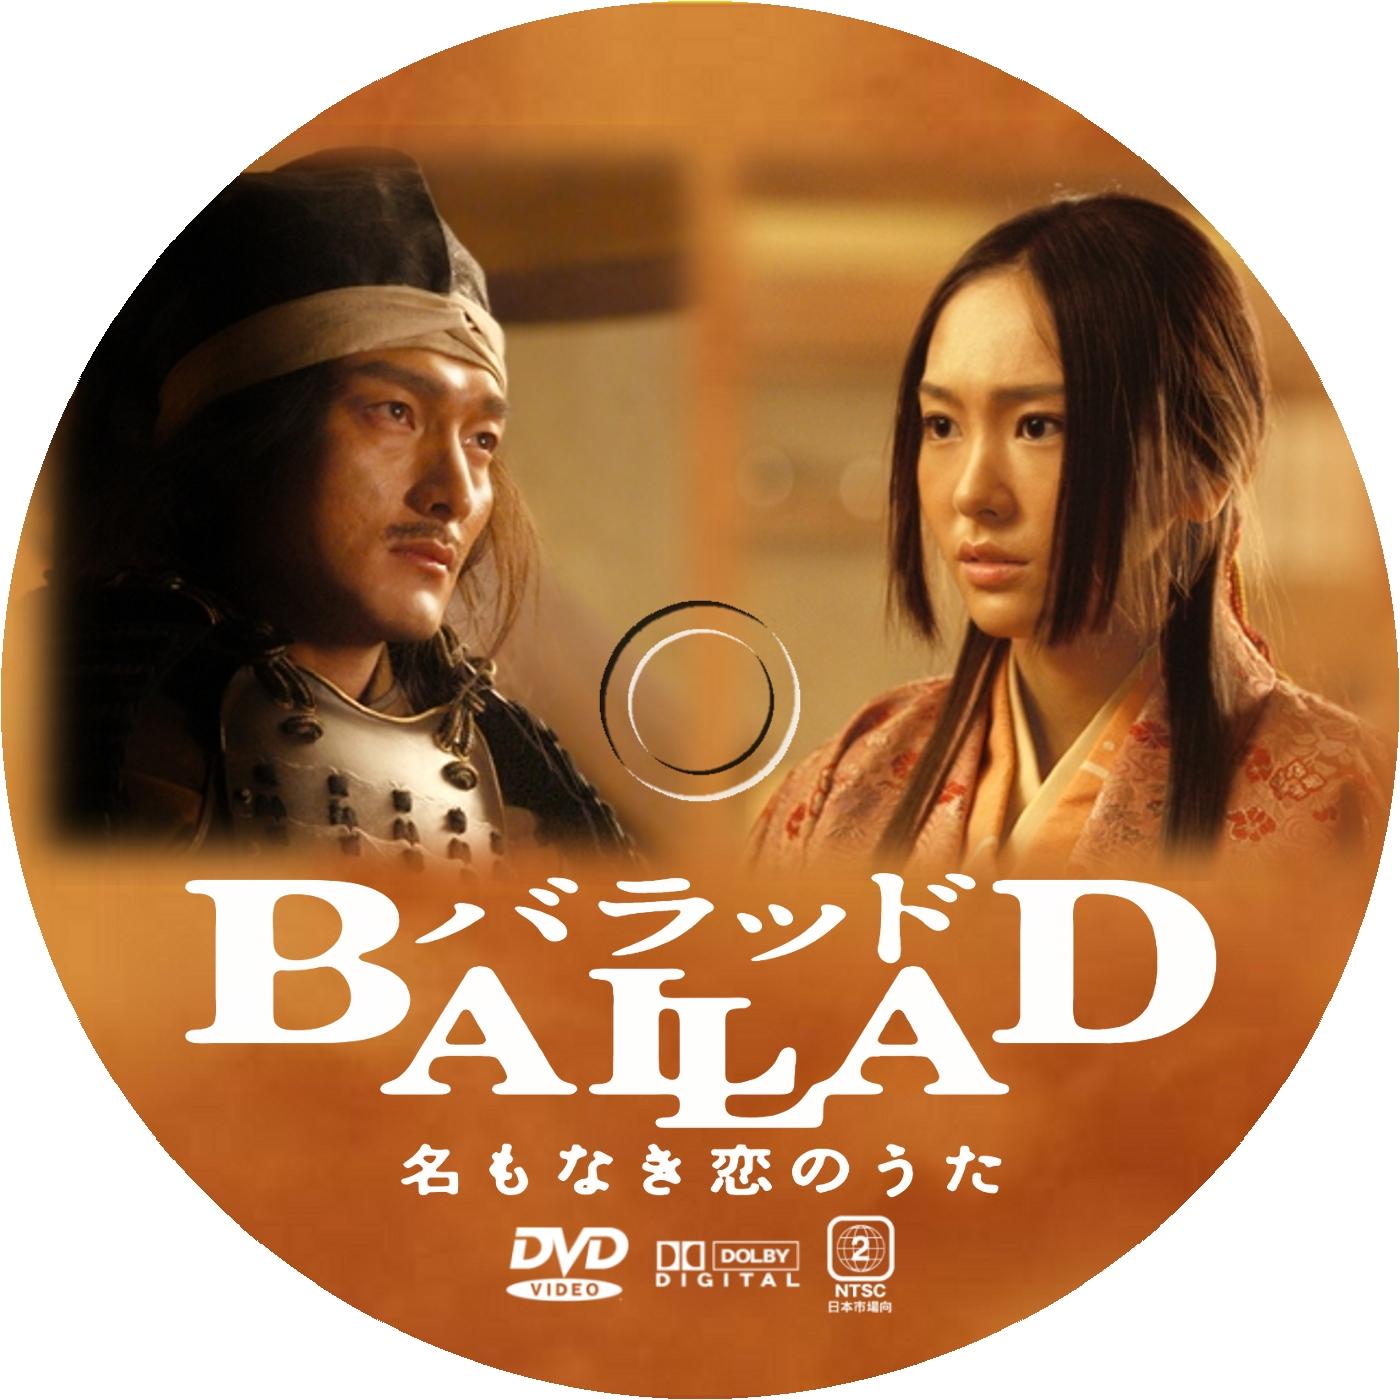 ballad 名もなき恋のうた dvd ラベル 映画のdvdラベル